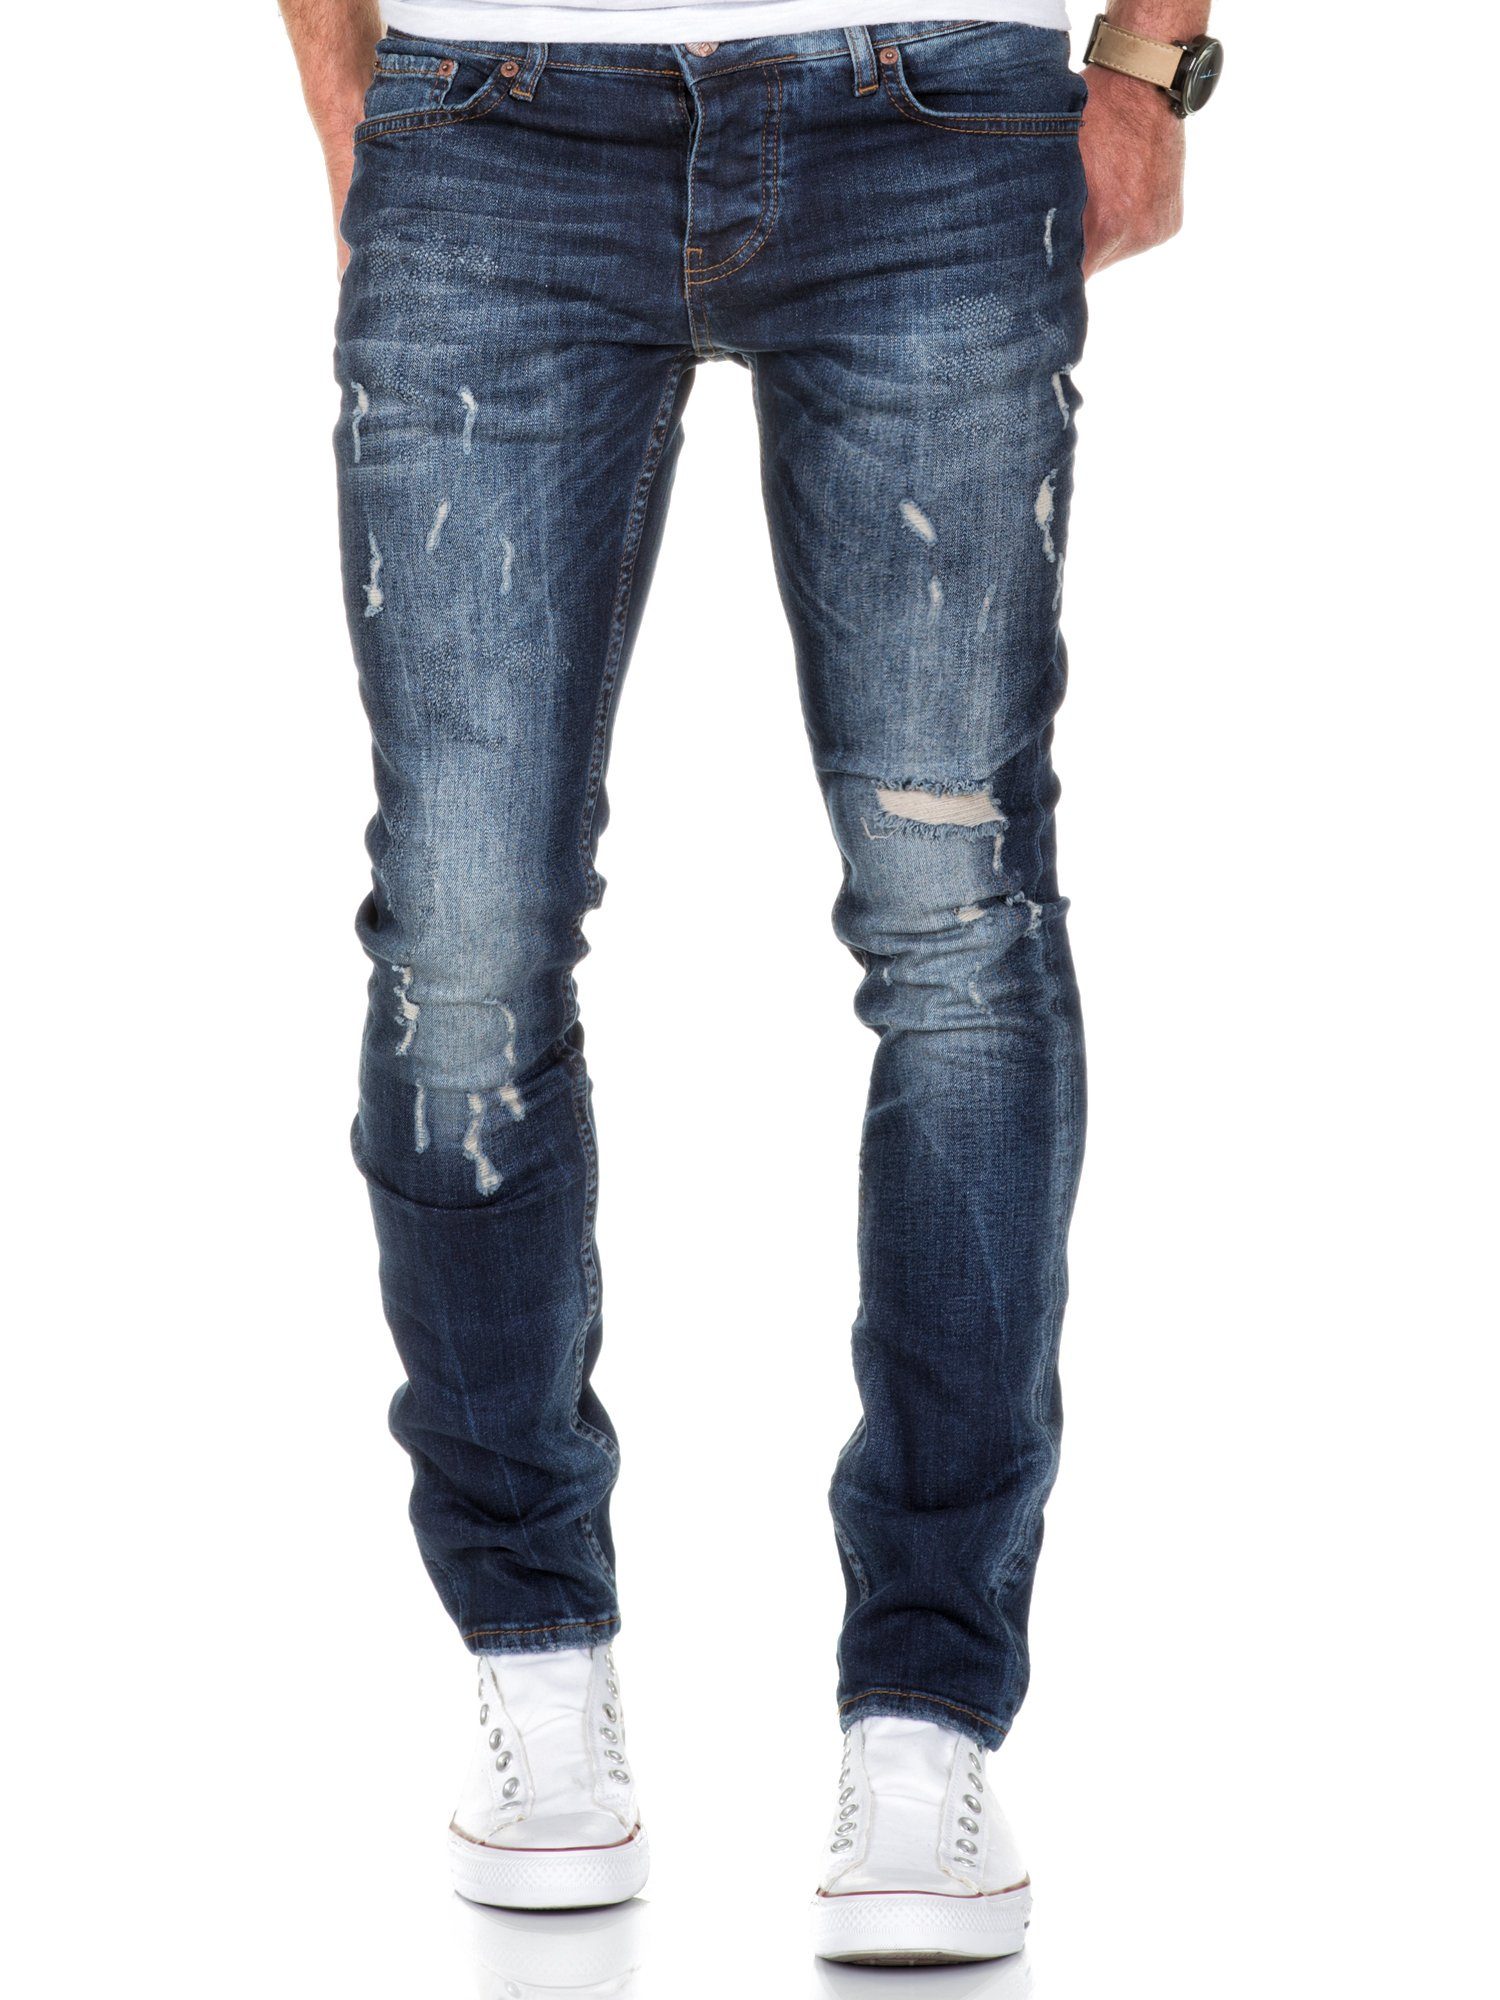 Amaci&Sons Slim-fit-Jeans FRESNO Slim Fit Destroyed Jeans Herren Destroyed Regular Slim Denim Basic Hose Dunkelblau